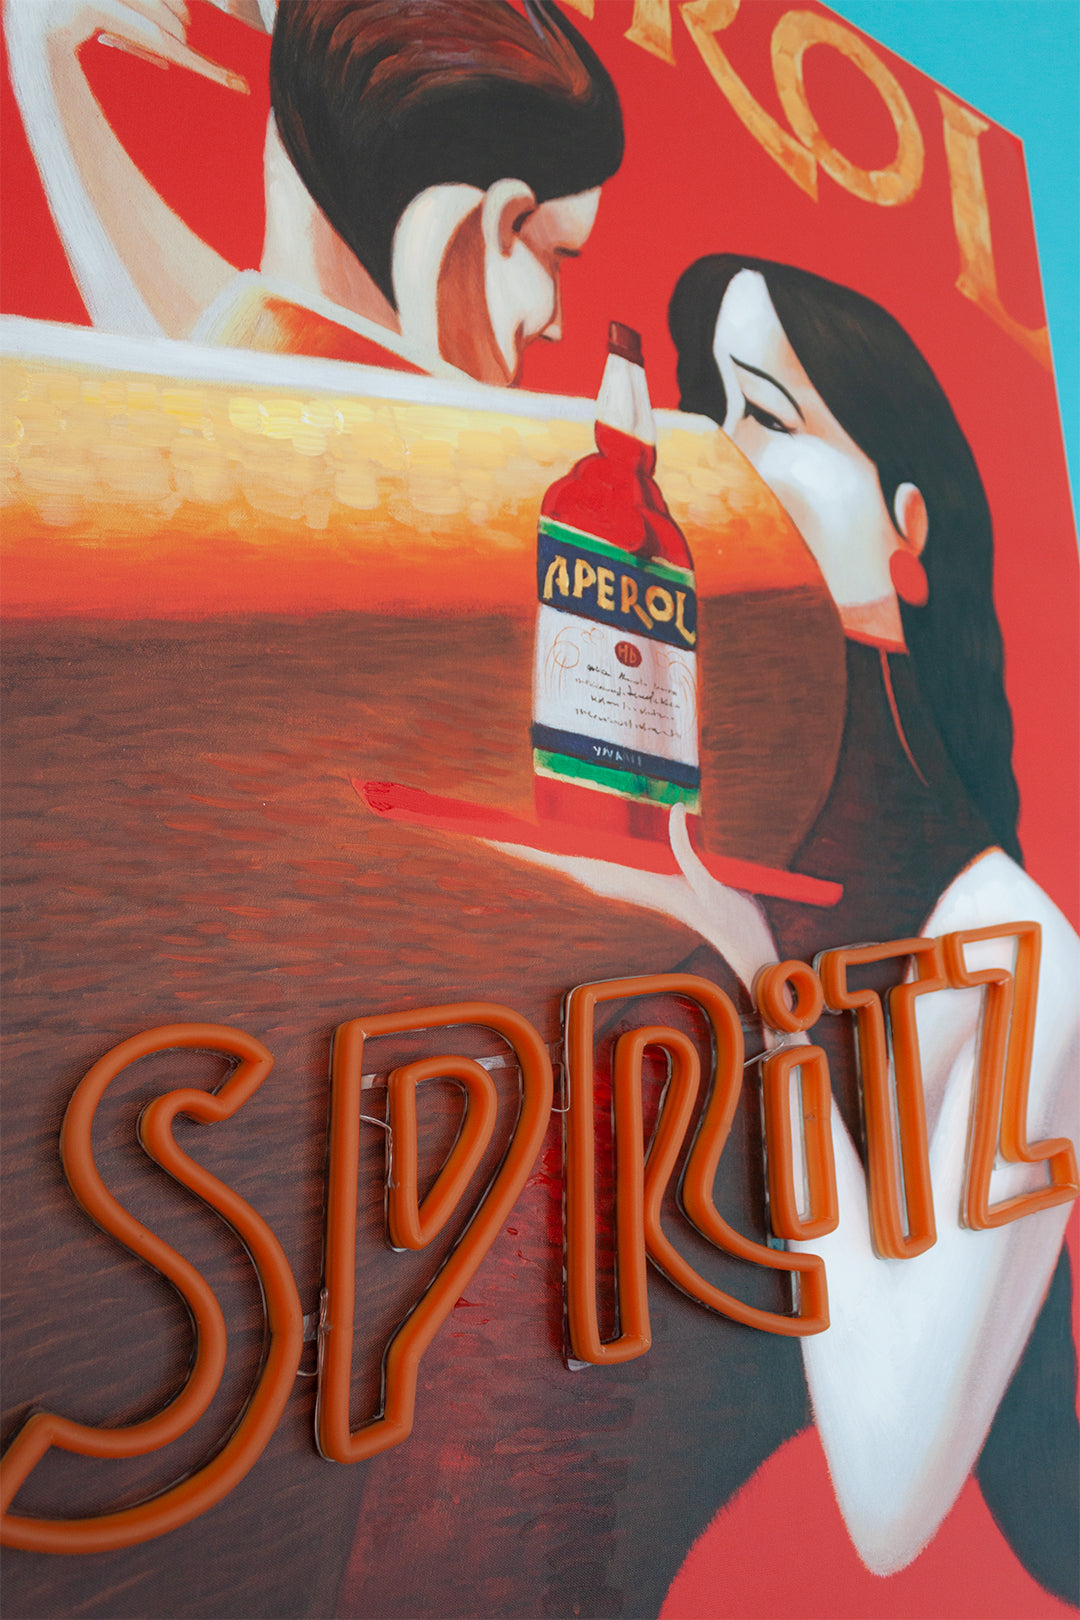 Obra de arte mural 'Spritz' con LED de neón - ESTÁNDAR